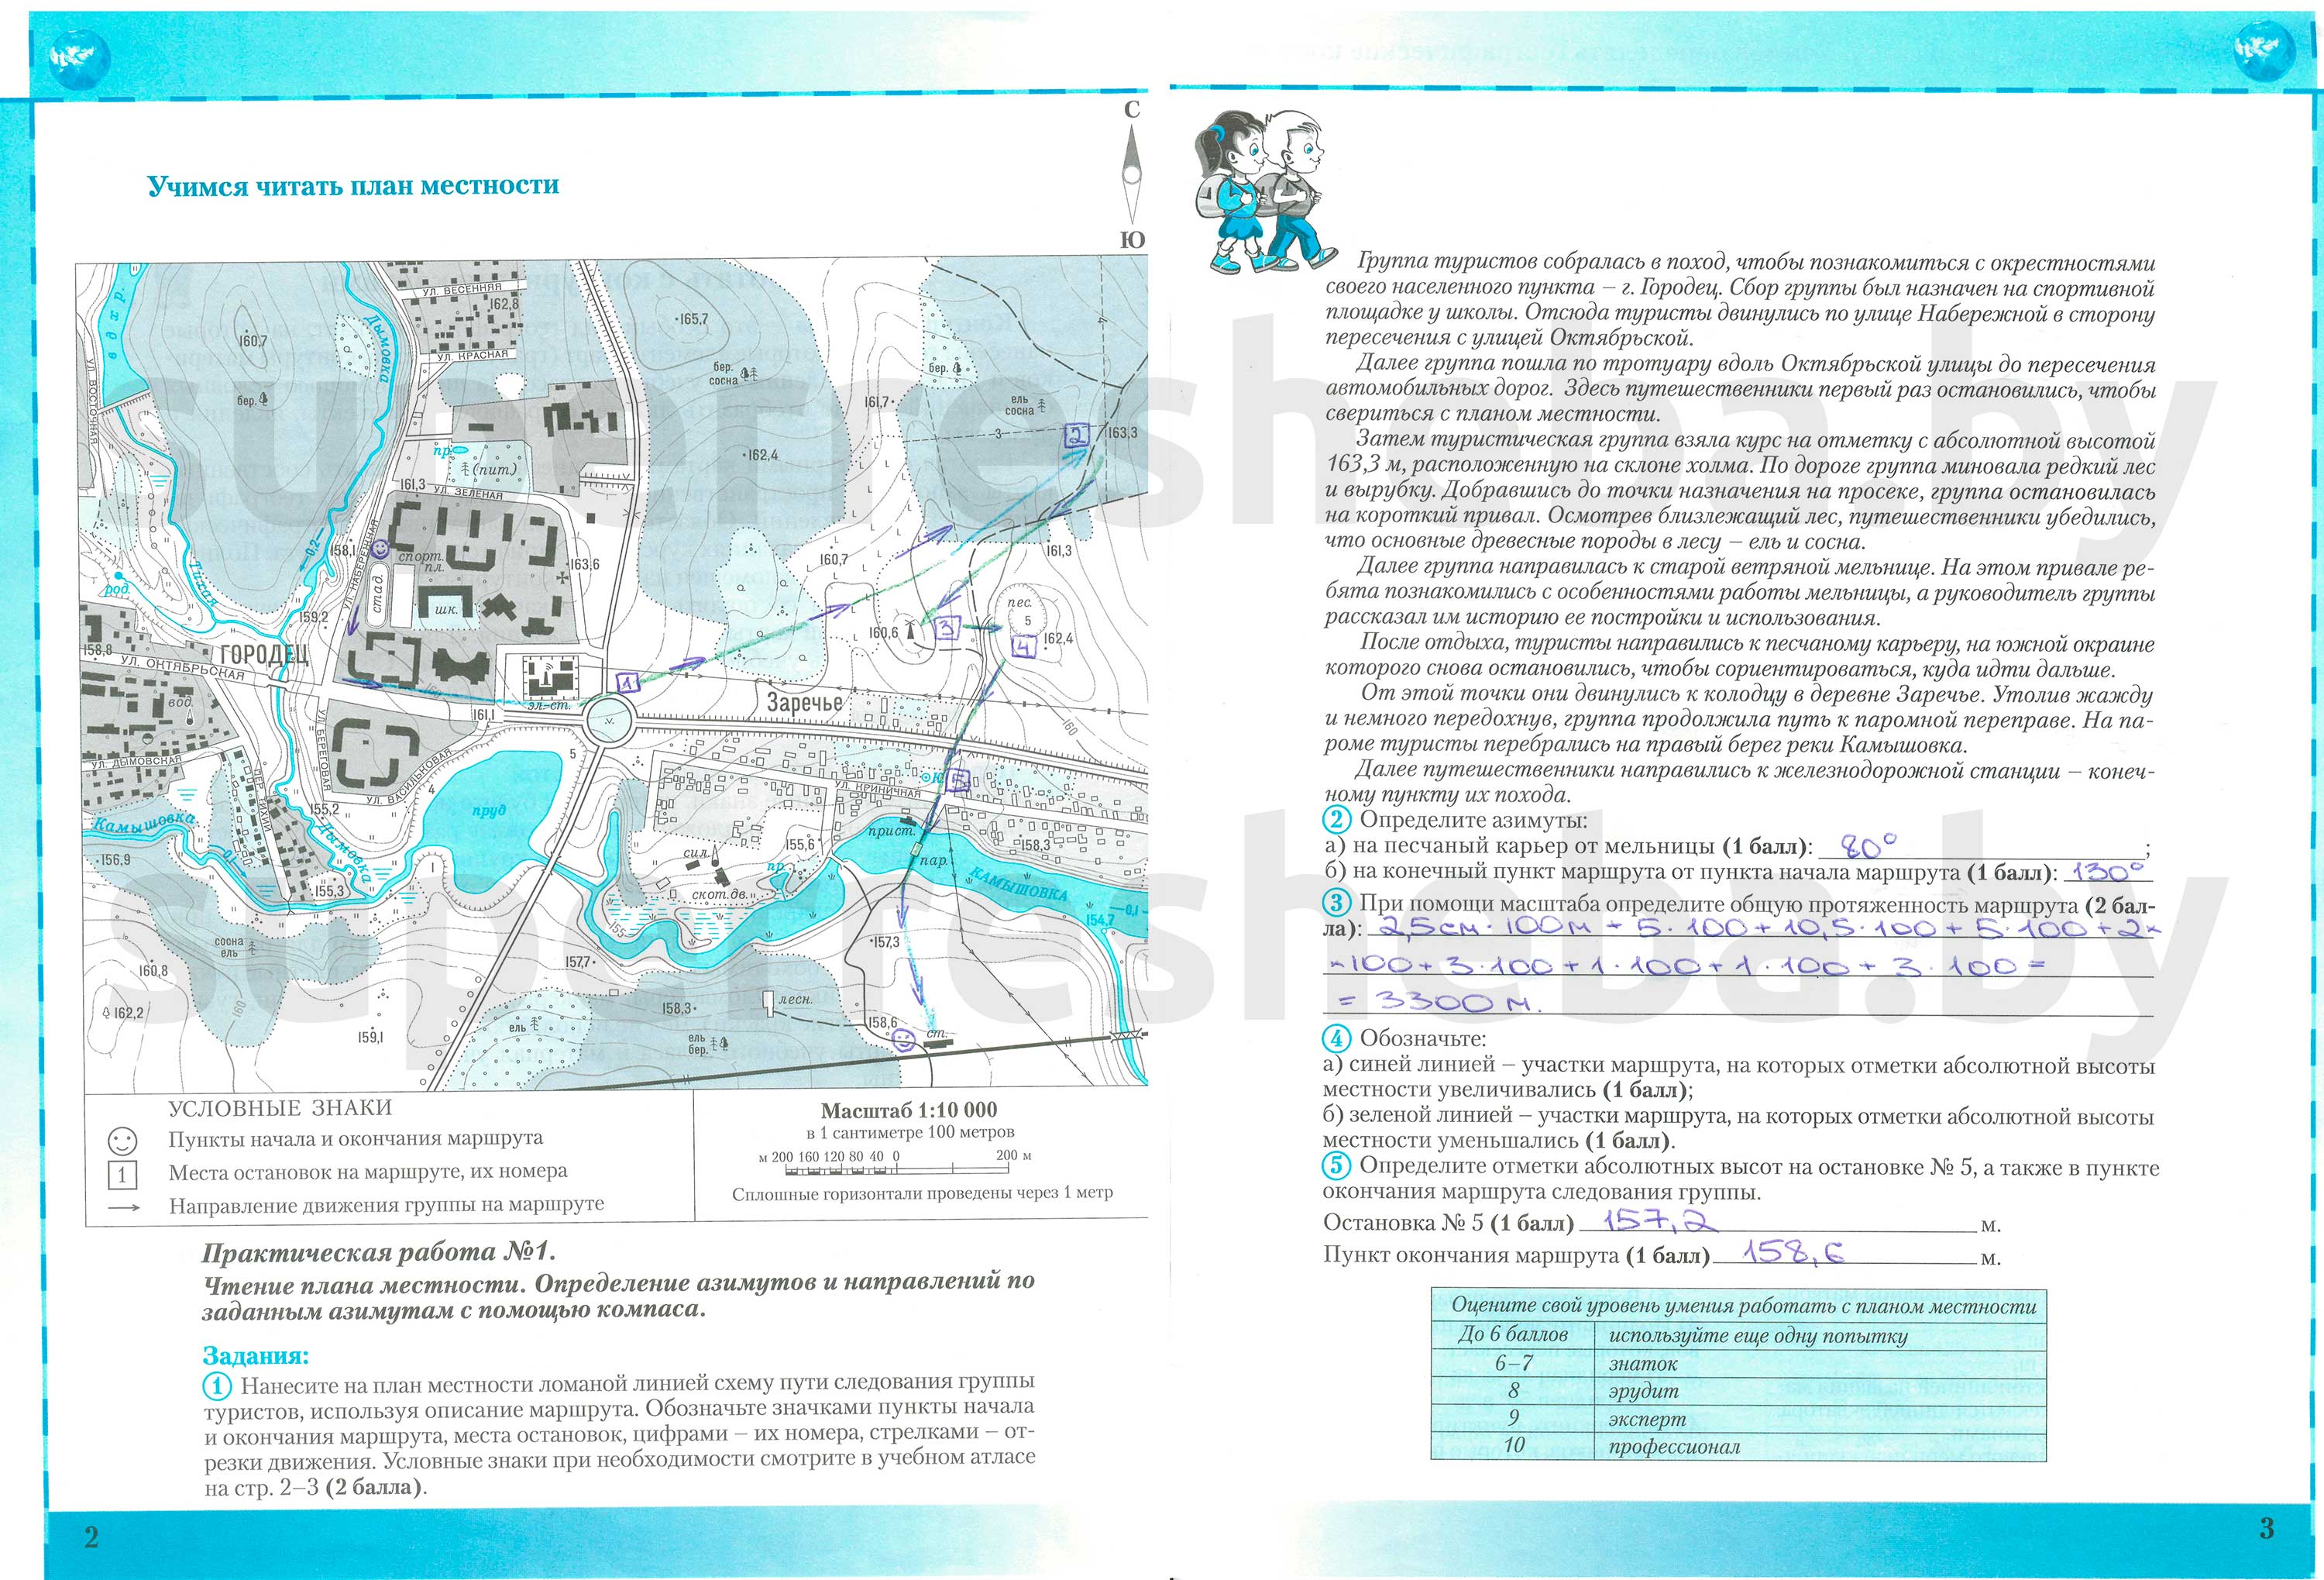 Практические задания по теме:«Учимся читать план местности», стр. 2-3: 1 - решение